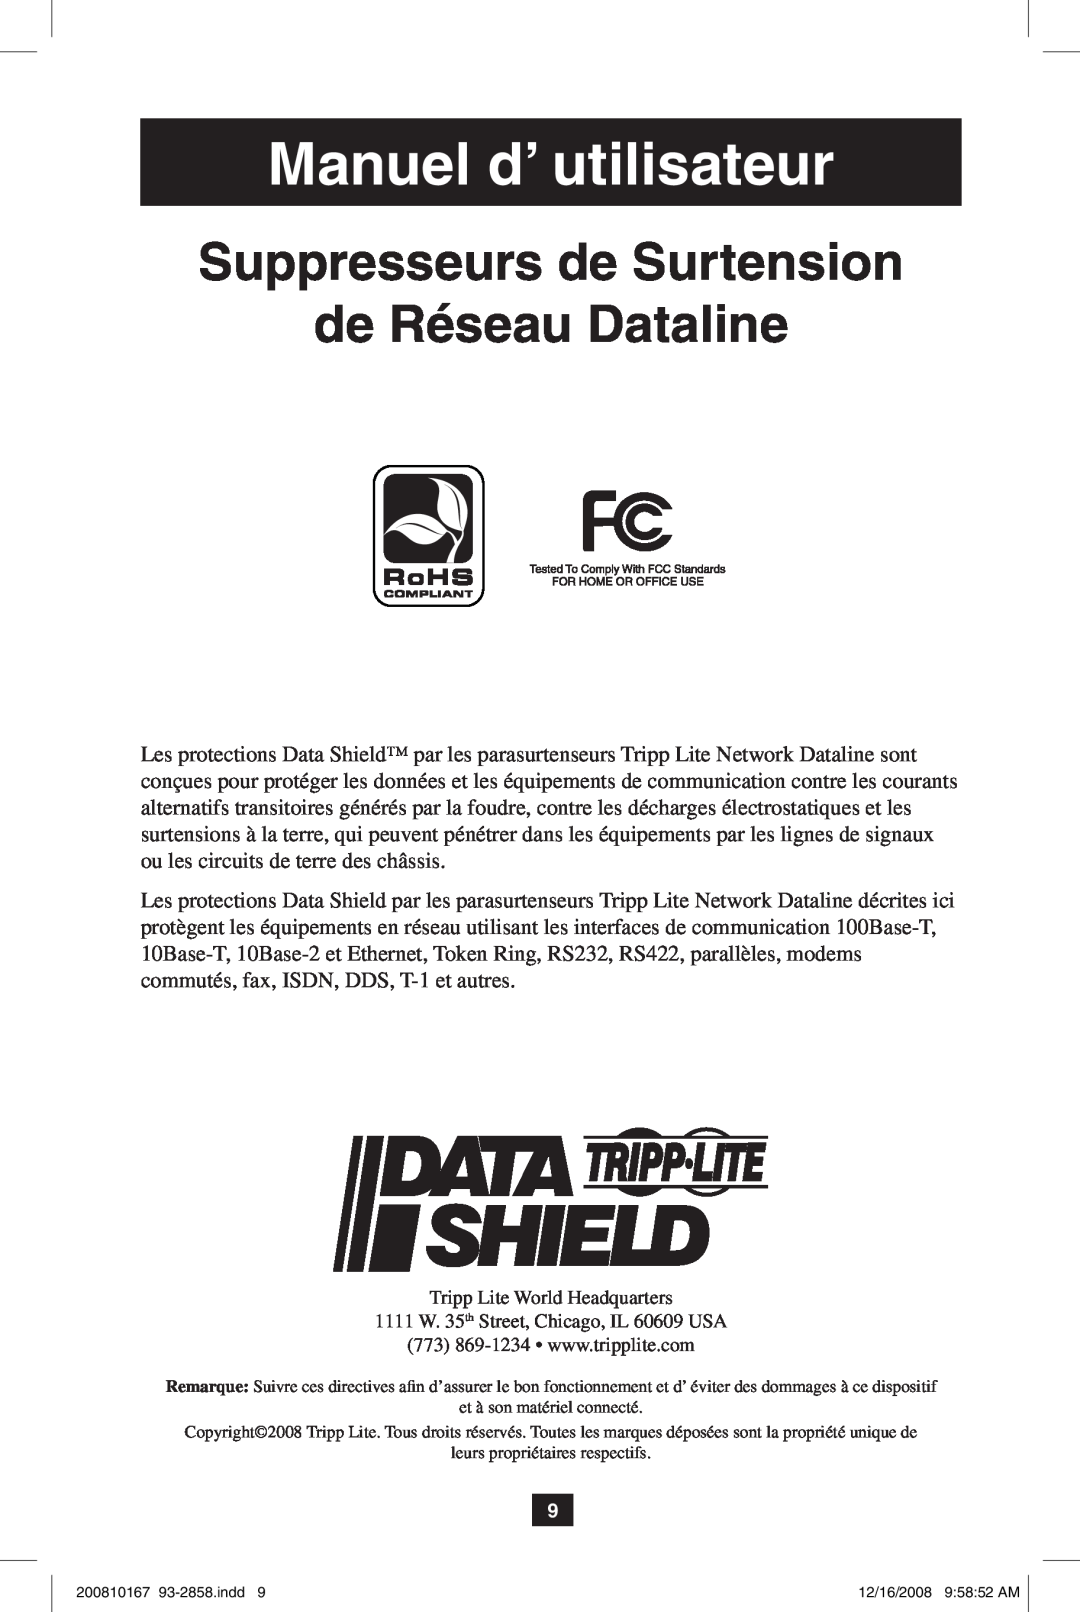 Tripp Lite Data Shield owner manual Manuel d’ utilisateur, Suppresseurs de Surtension de Réseau Dataline 